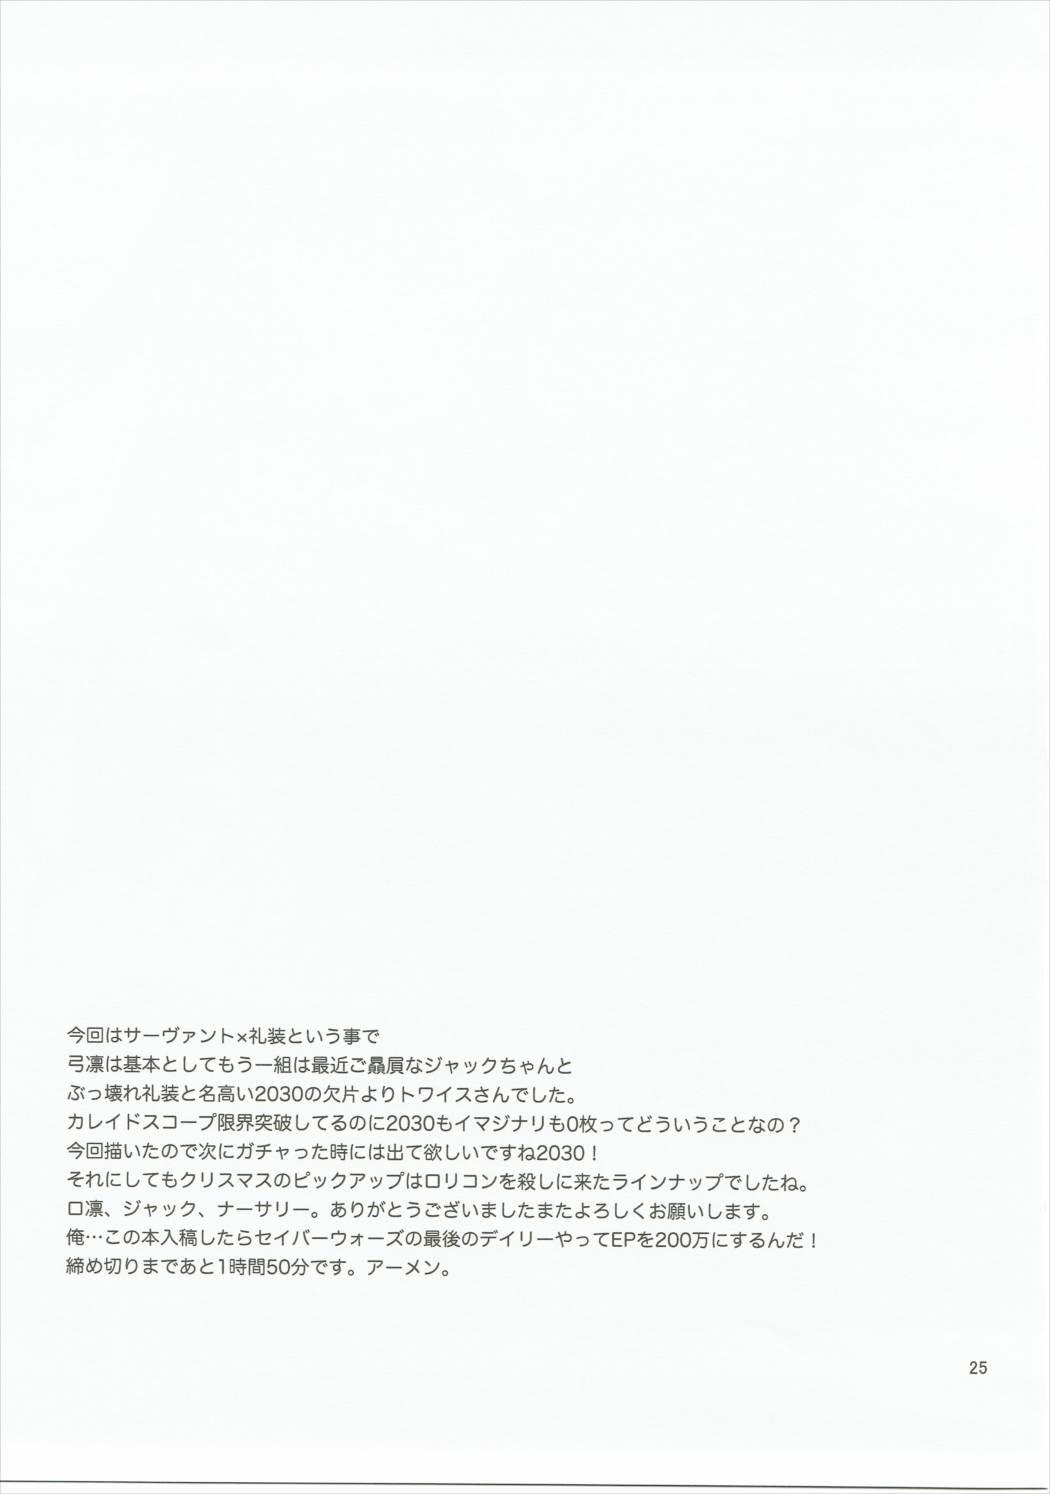 Riding Giji Genkai Toppa Jikken Houkokusho 01 - Fate grand order Blonde - Page 24